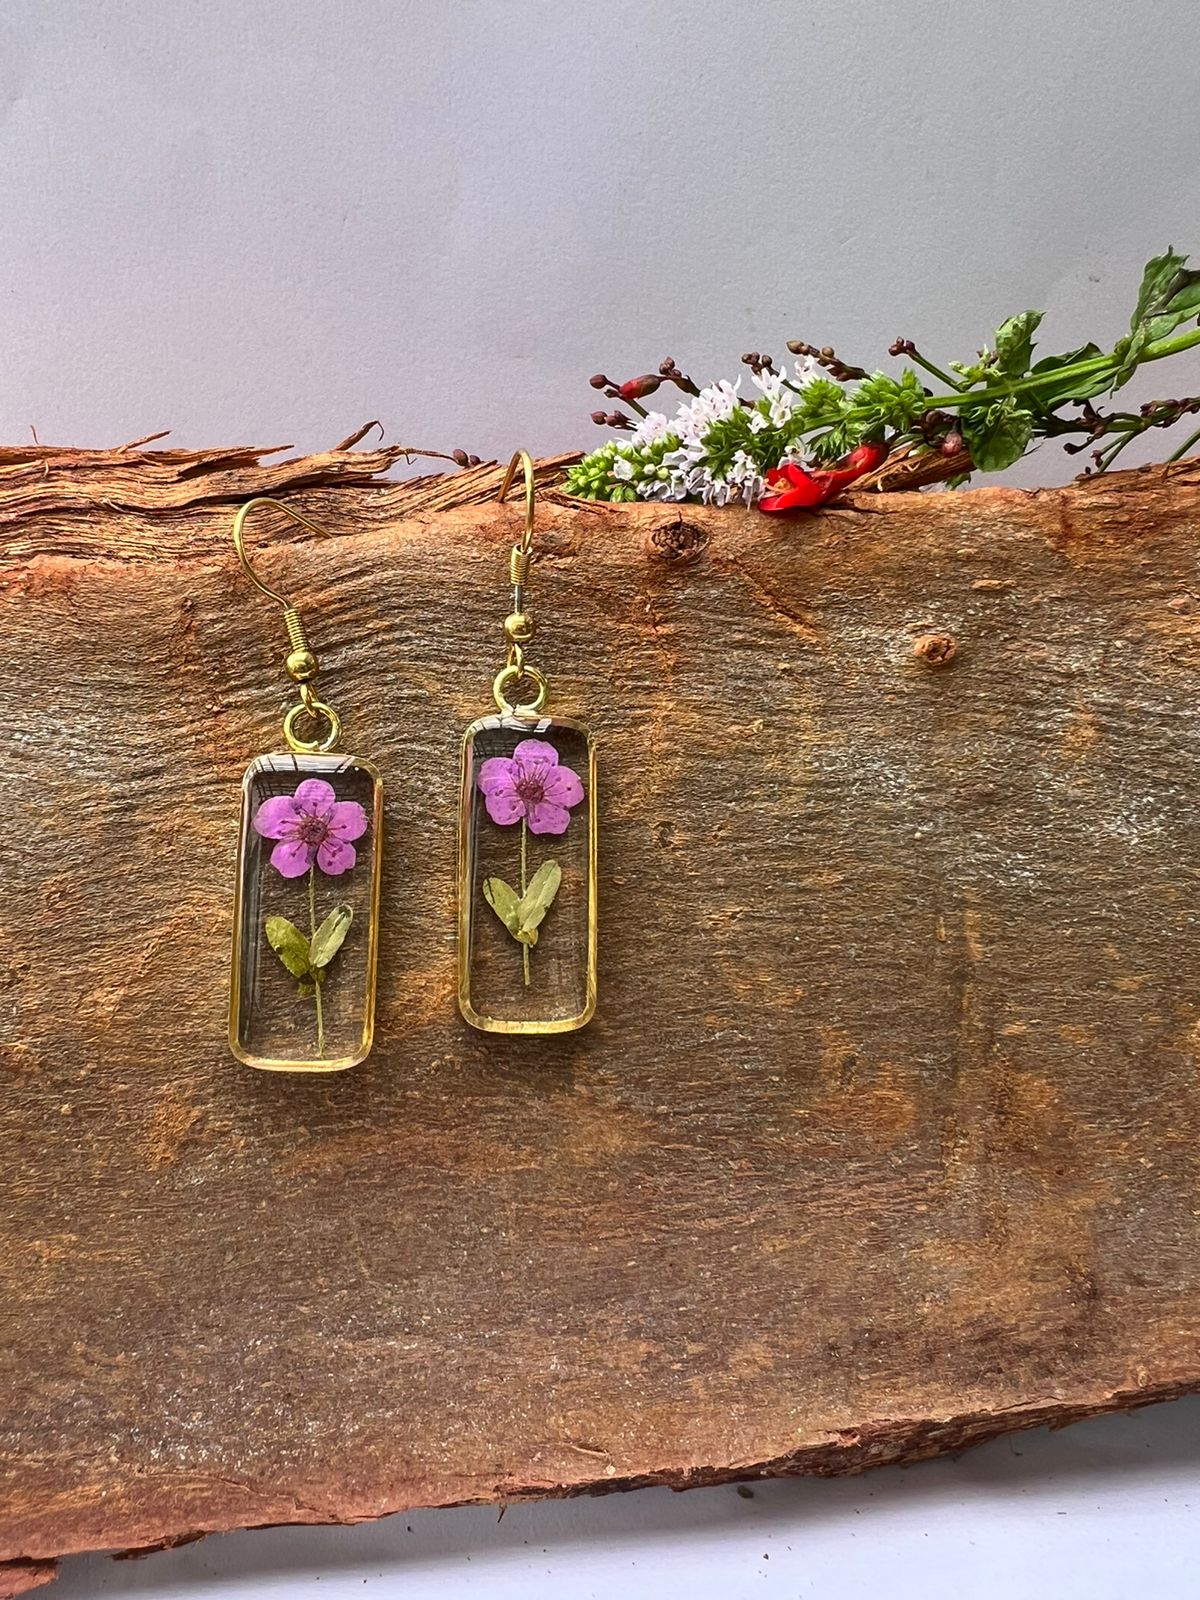 fynbos purple flower necklace earrings